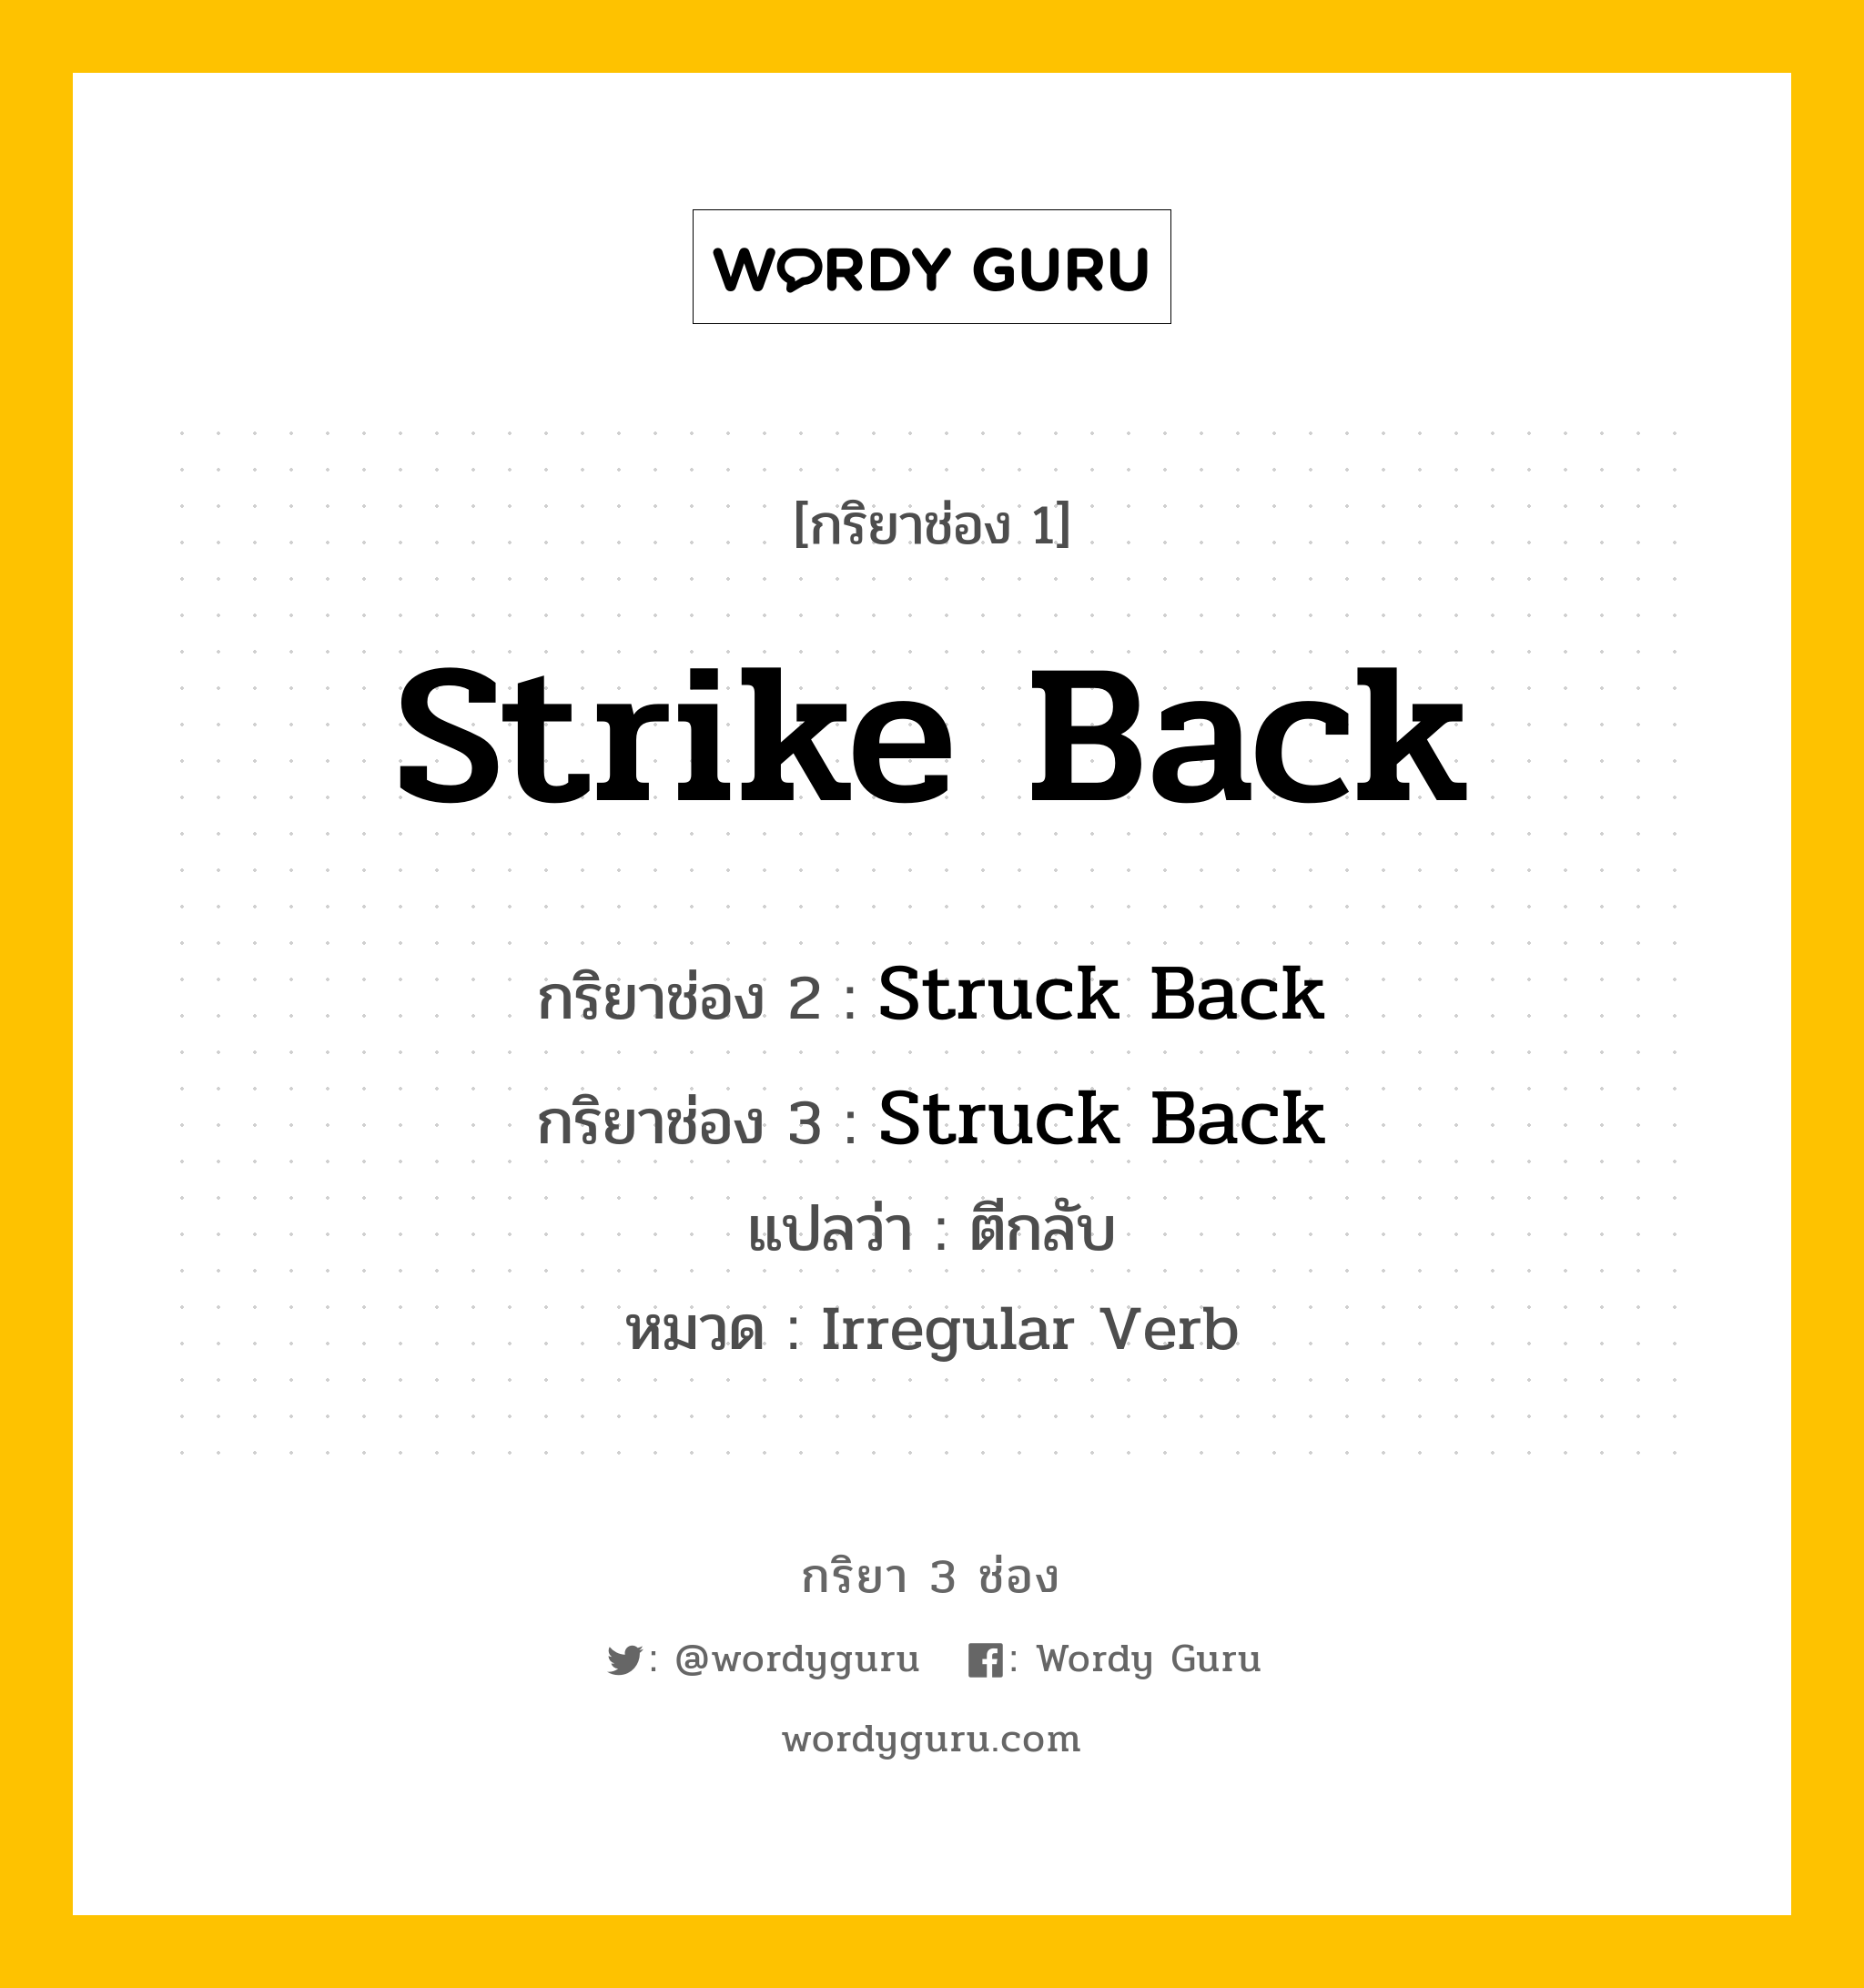 กริยา 3 ช่อง: Strike Back ช่อง 2 Strike Back ช่อง 3 คืออะไร, กริยาช่อง 1 Strike Back กริยาช่อง 2 Struck Back กริยาช่อง 3 Struck Back แปลว่า ตีกลับ หมวด Irregular Verb หมวด Irregular Verb